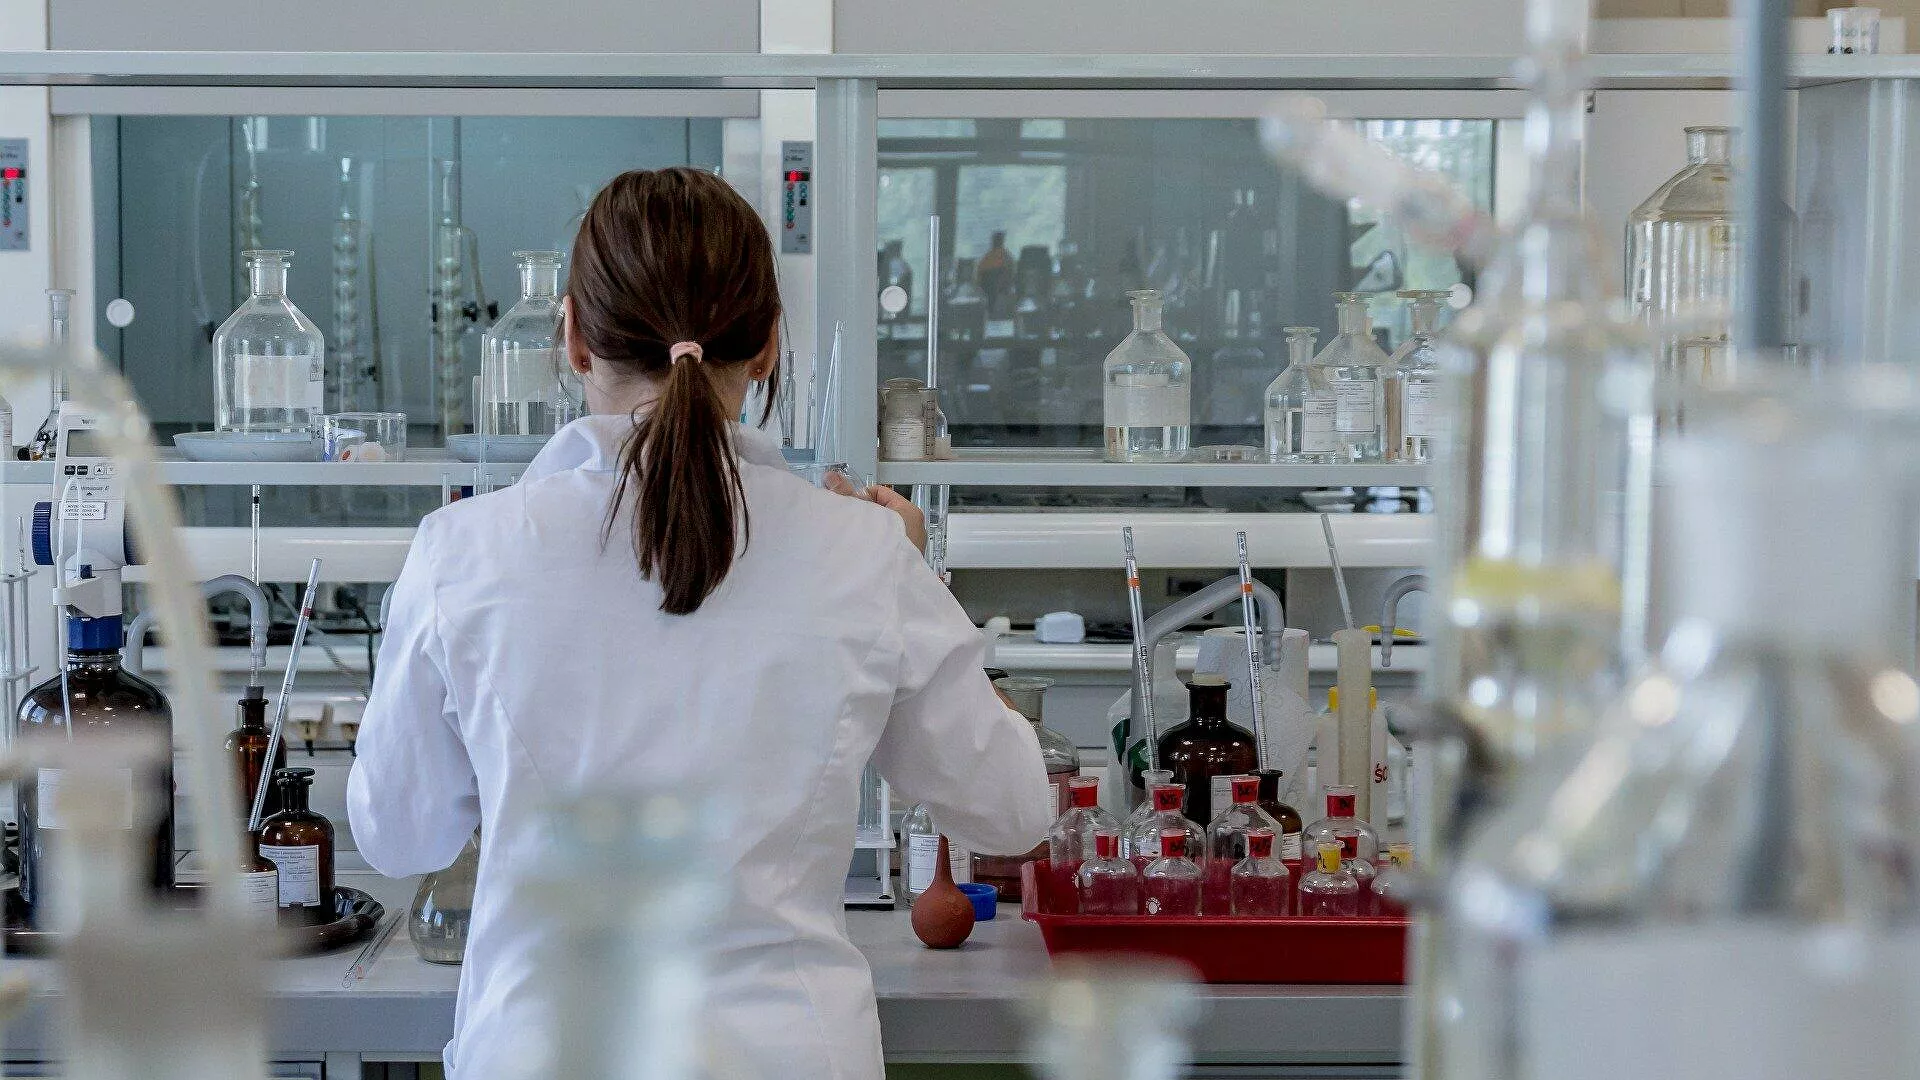  Estudio demuestra que en Chile hay una baja inclusión de mujeres en ciencia por la falta de referentes